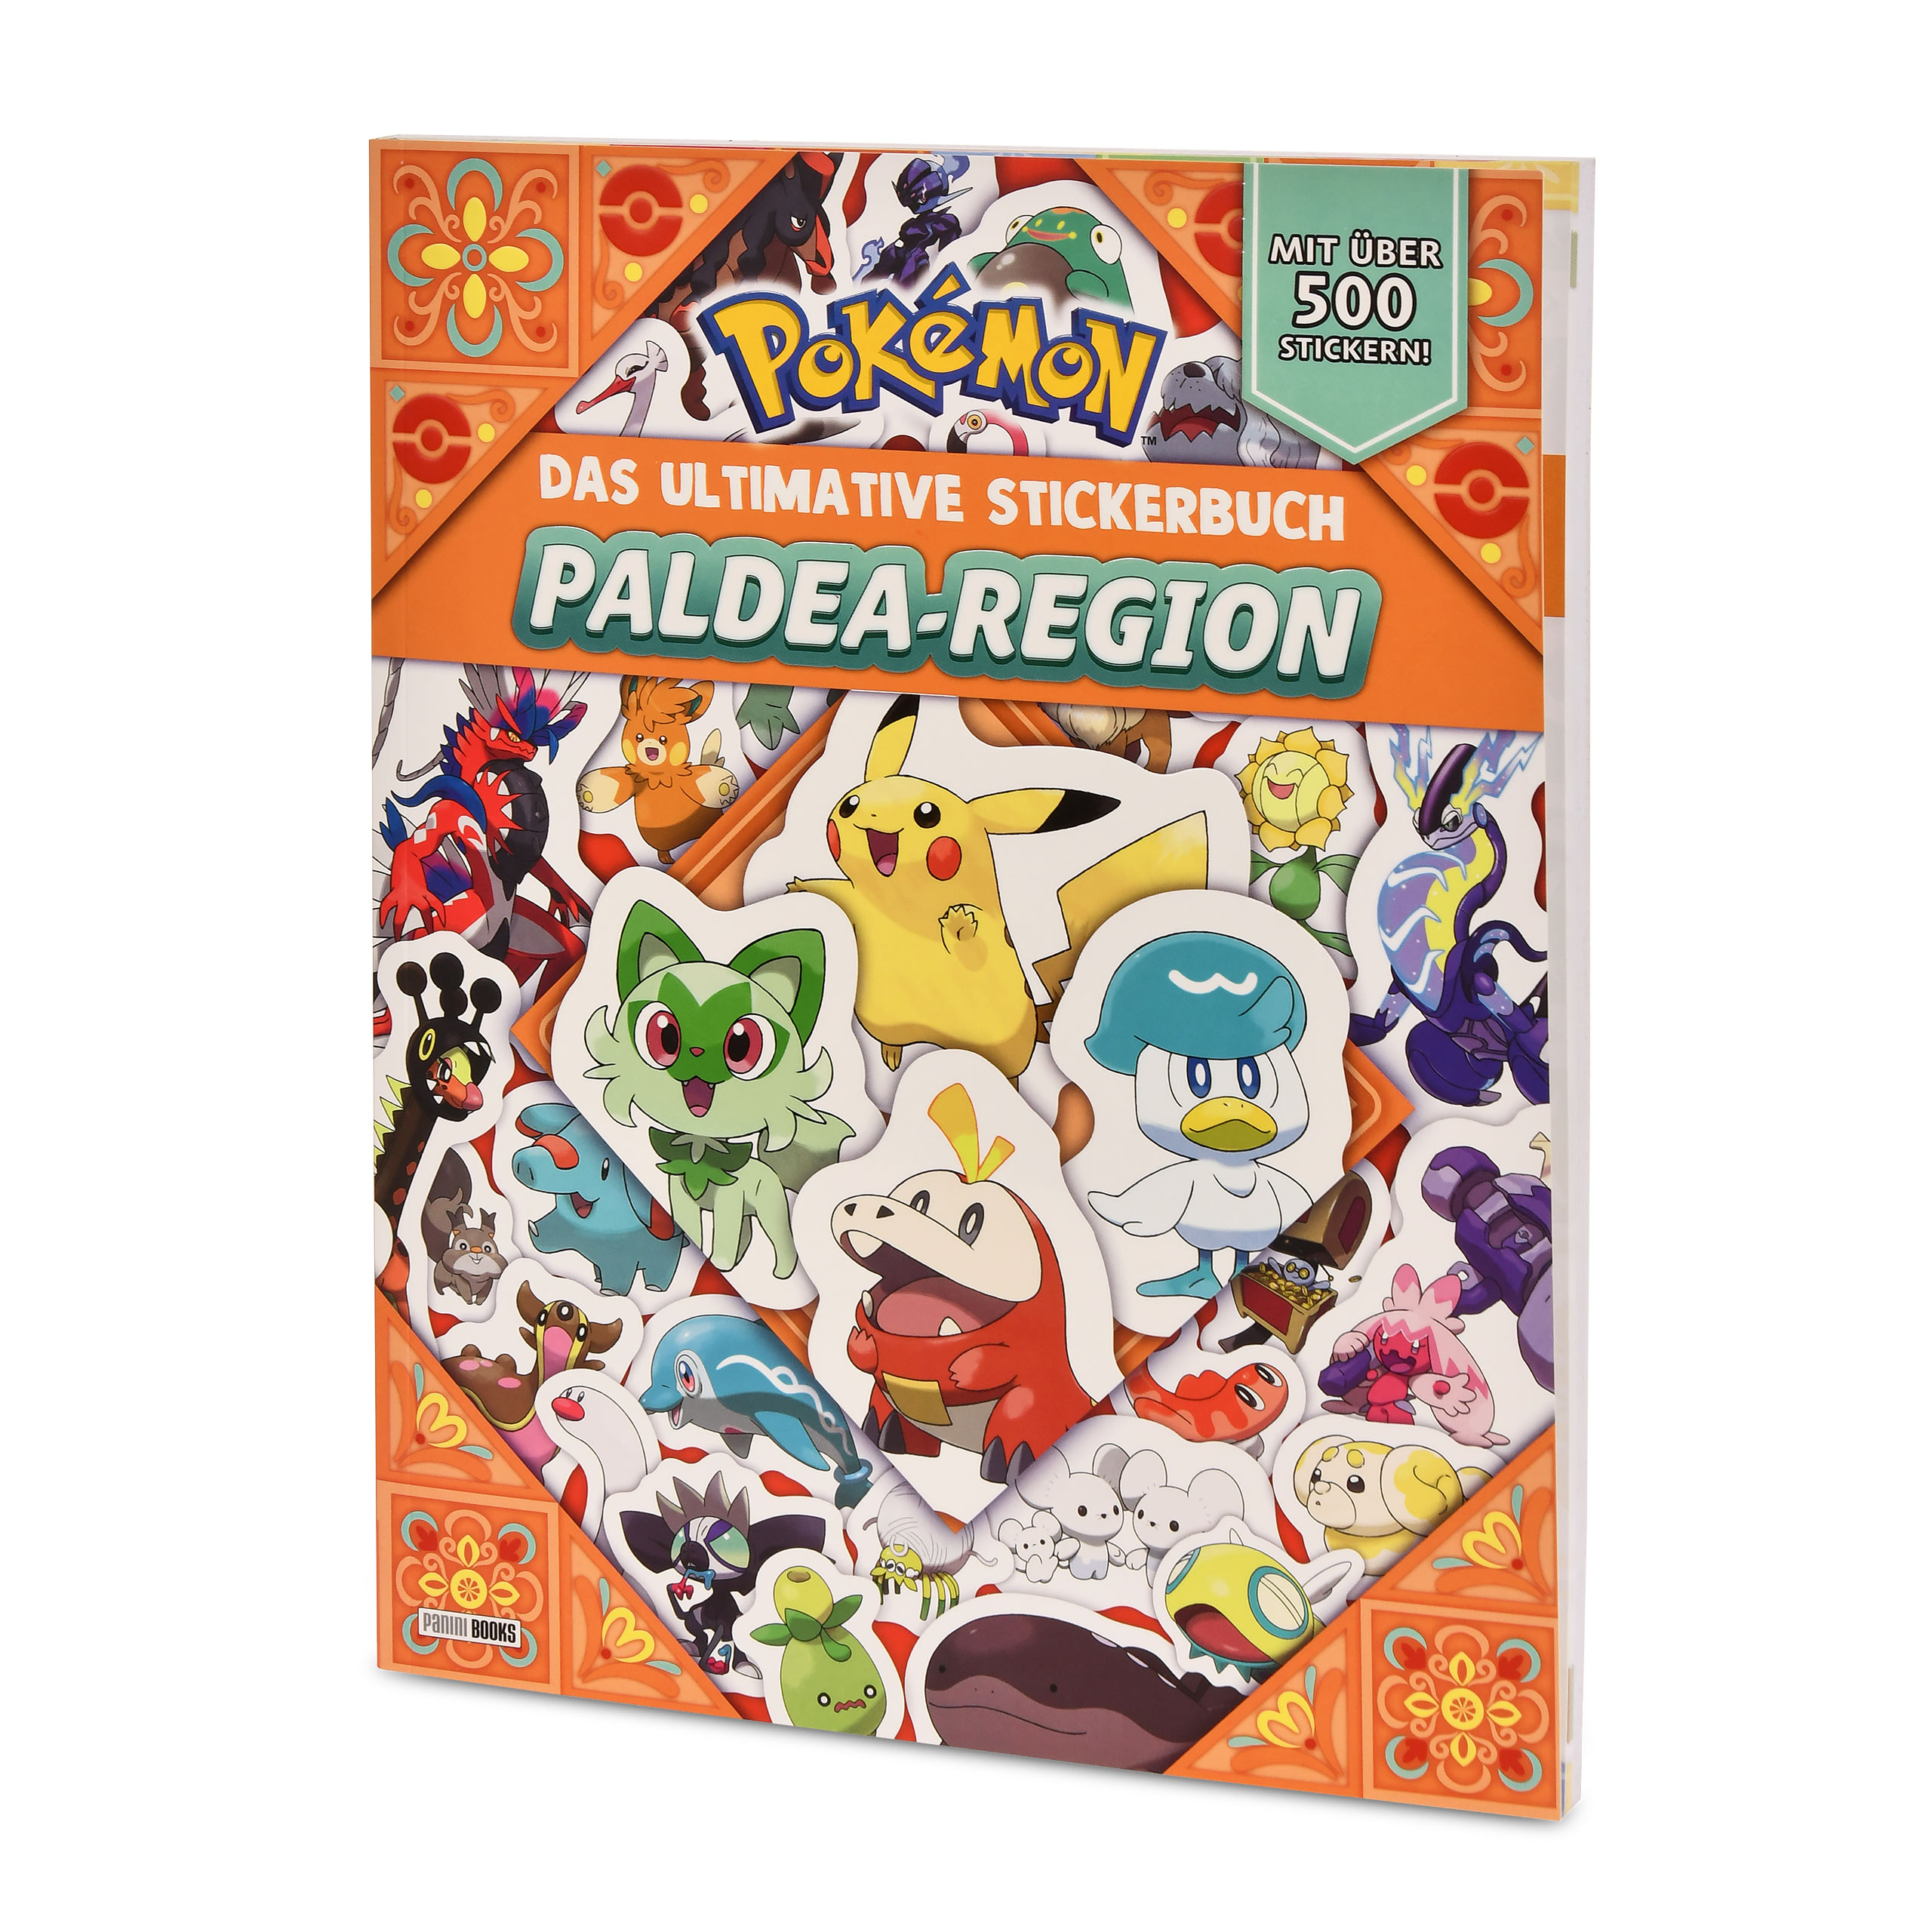 Pokemon - The Ultimate Sticker Book of the Paldea Region